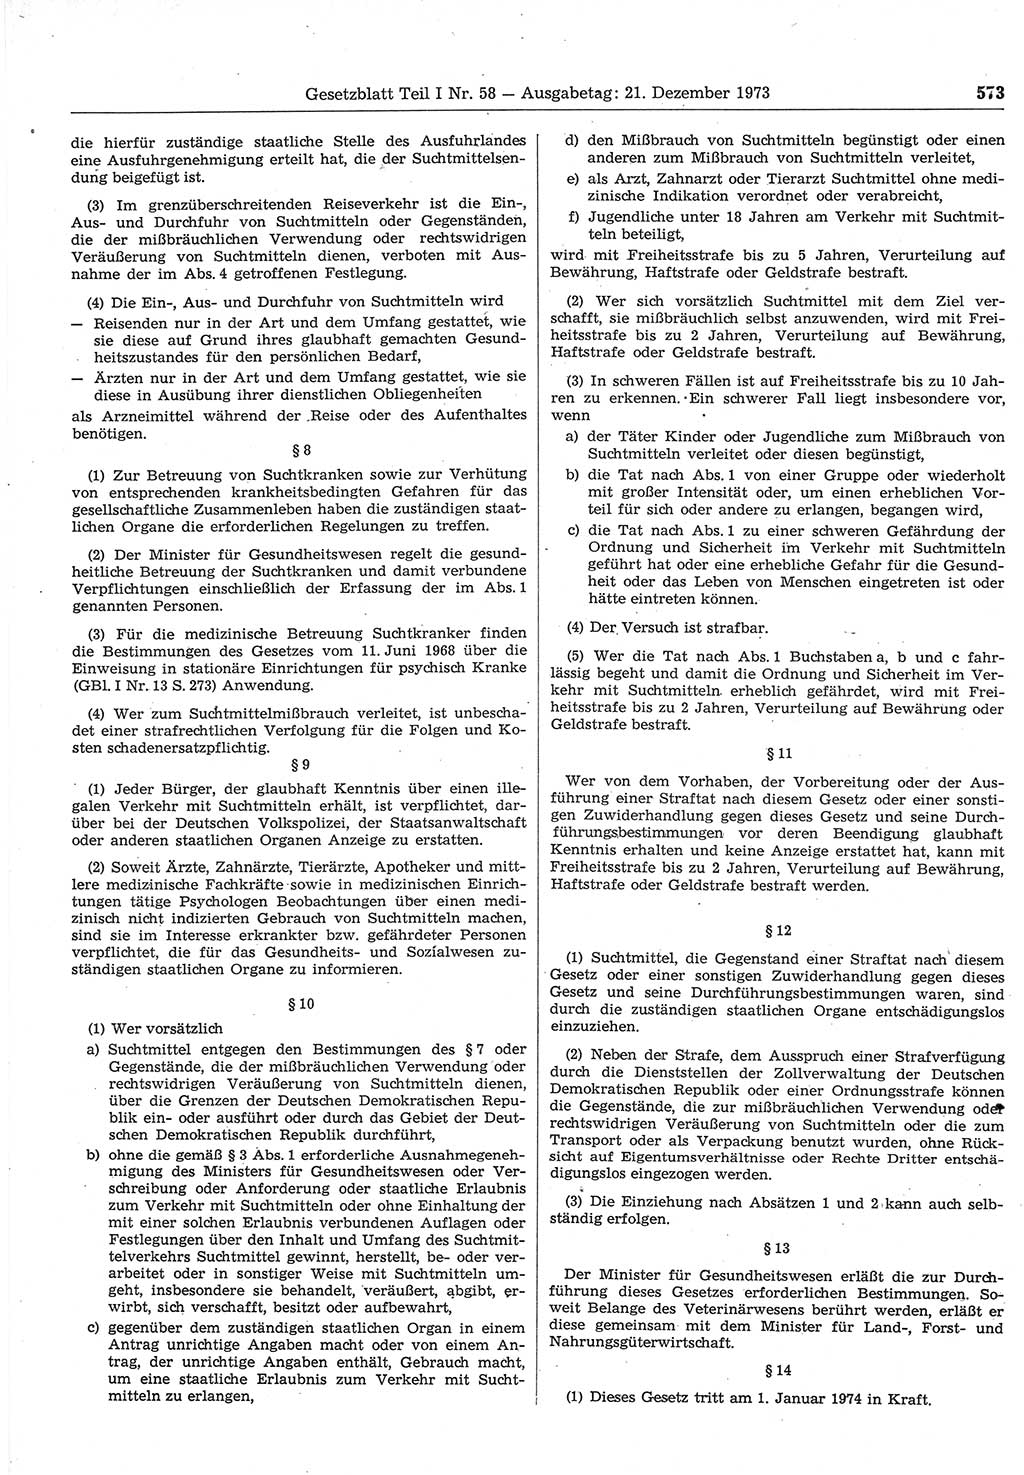 Gesetzblatt (GBl.) der Deutschen Demokratischen Republik (DDR) Teil Ⅰ 1973, Seite 573 (GBl. DDR Ⅰ 1973, S. 573)